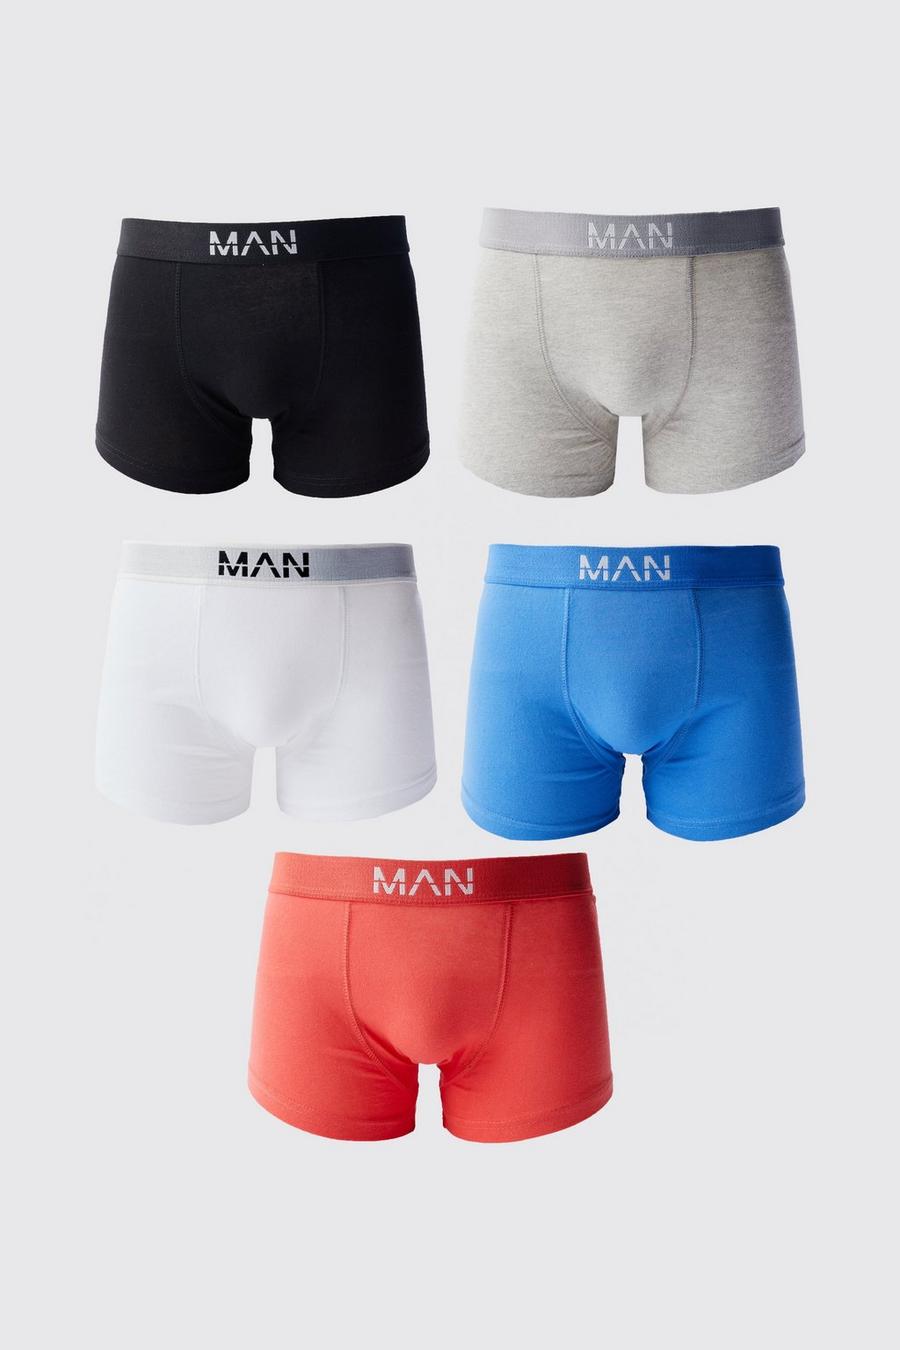 Lot de 5 boxers colorés - MAN, Multi